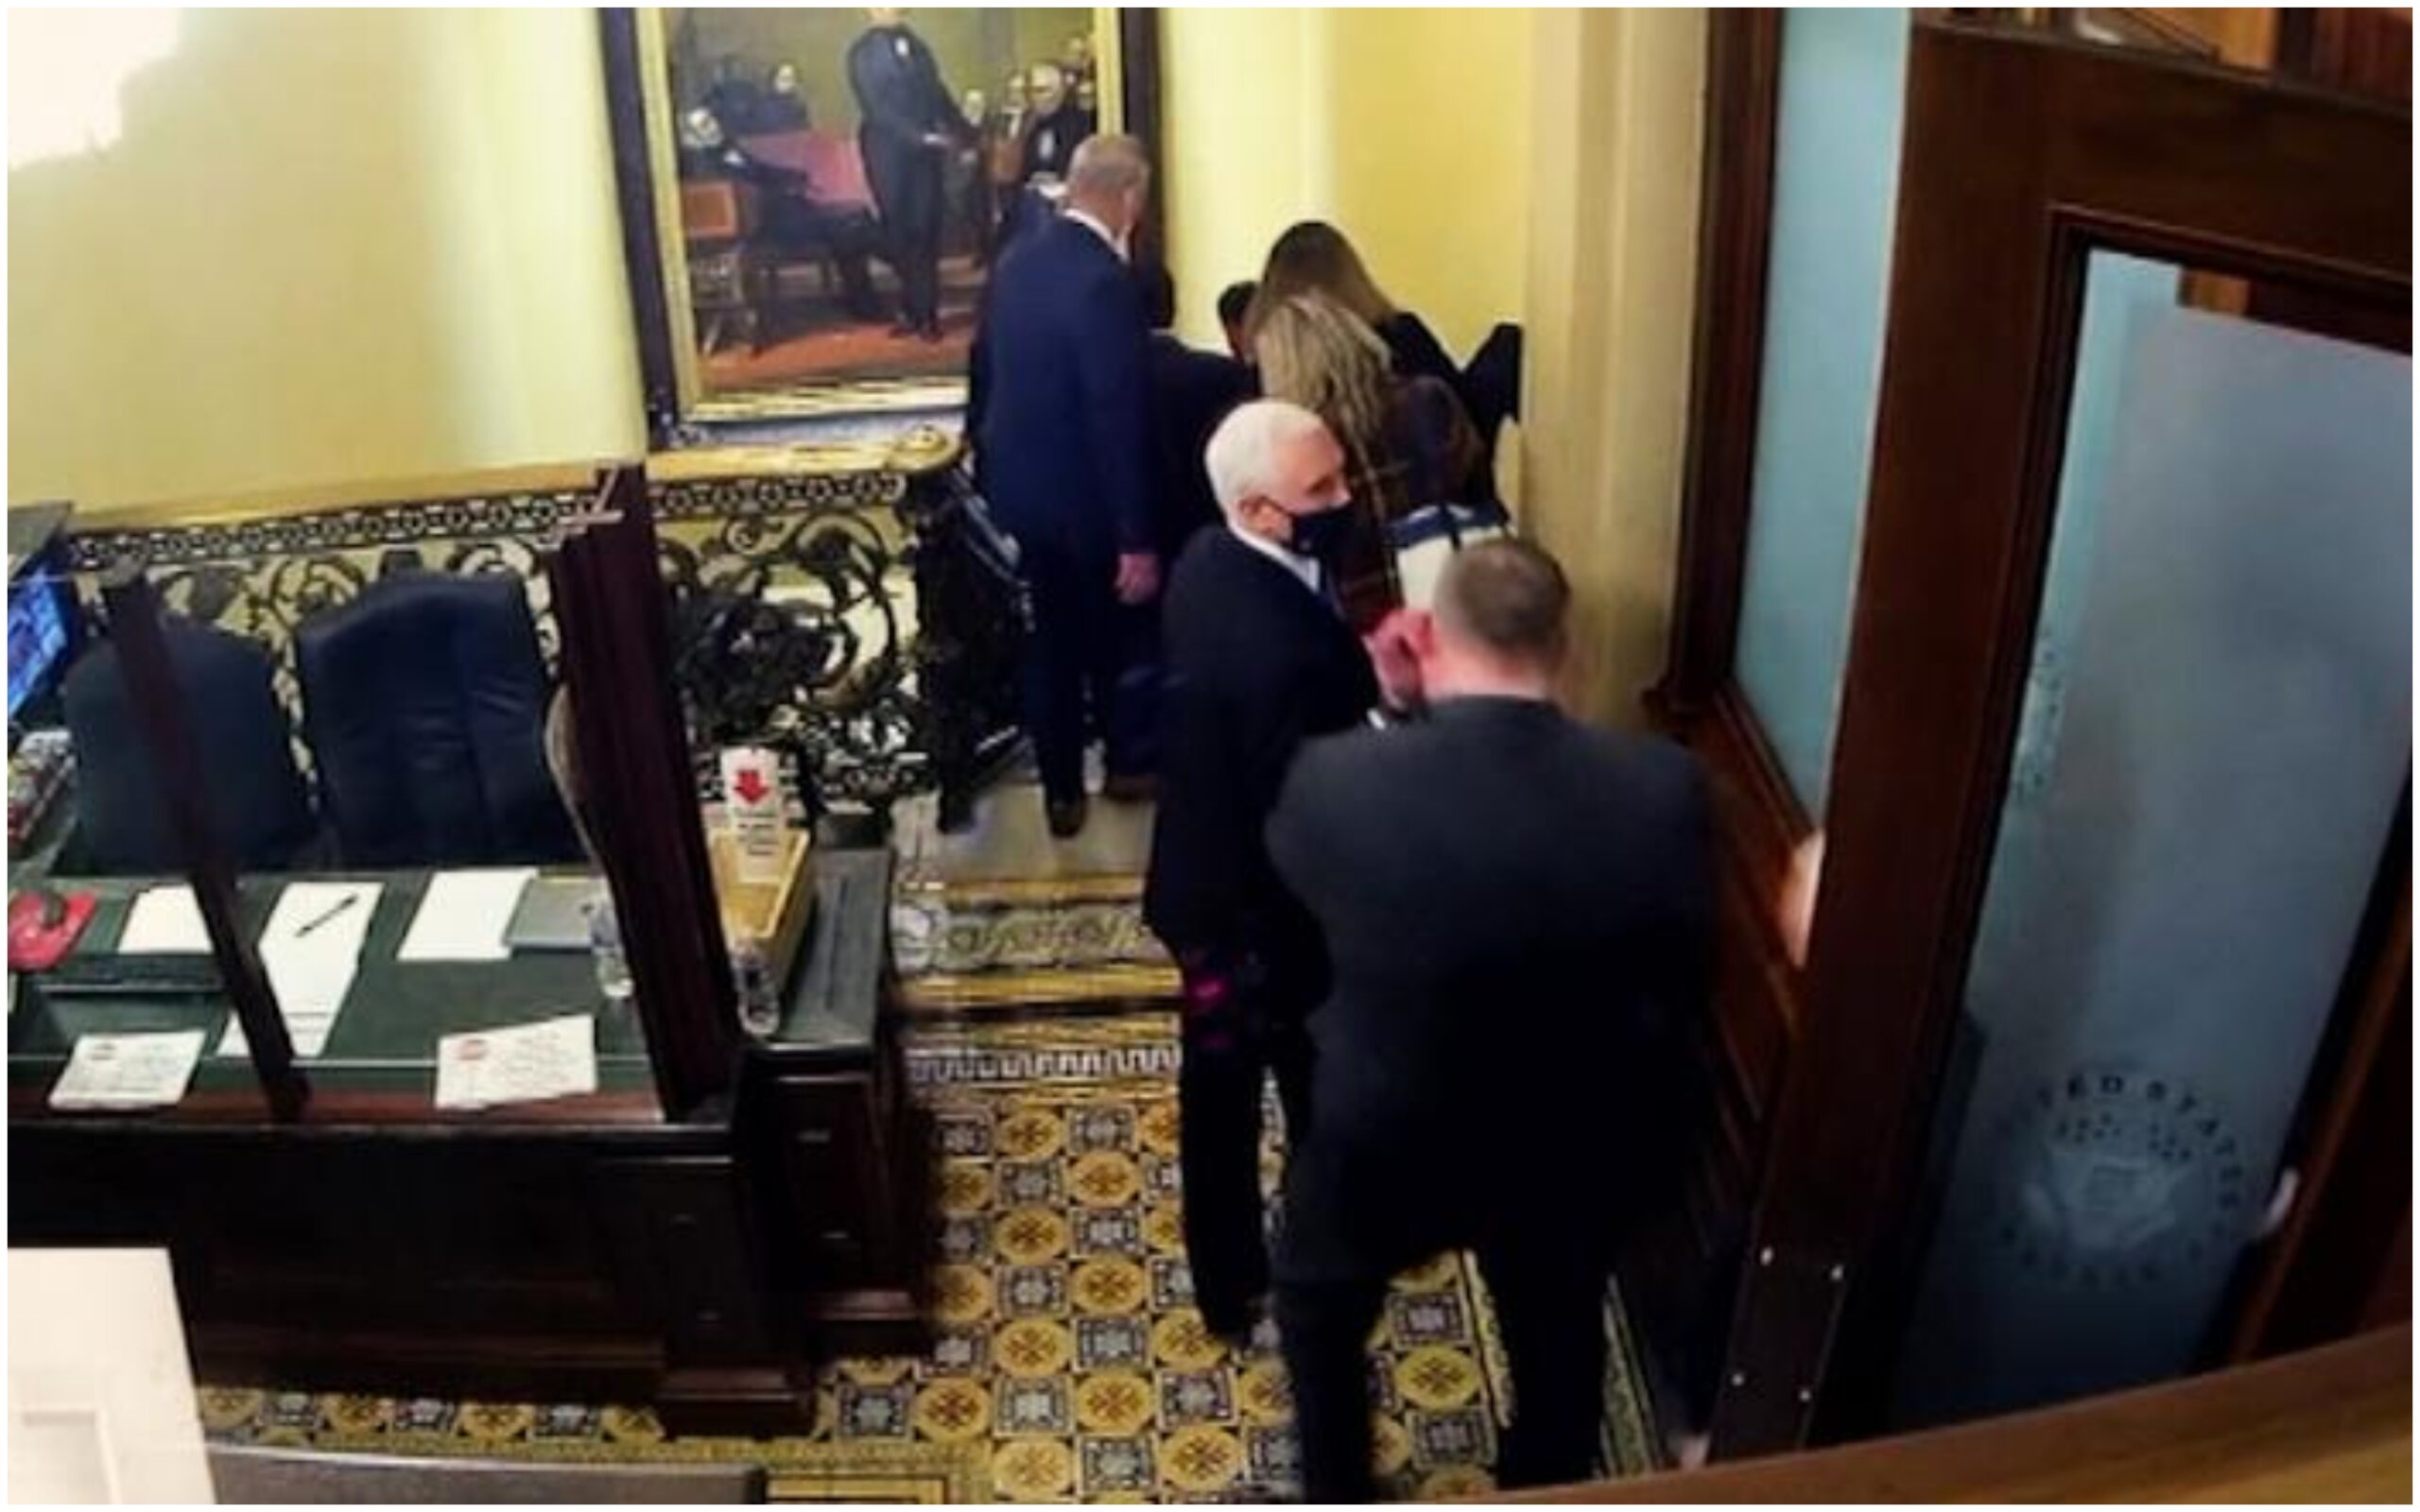 Senado de EU revela videos sobre evacuación de Pence en asalto al Capitolio